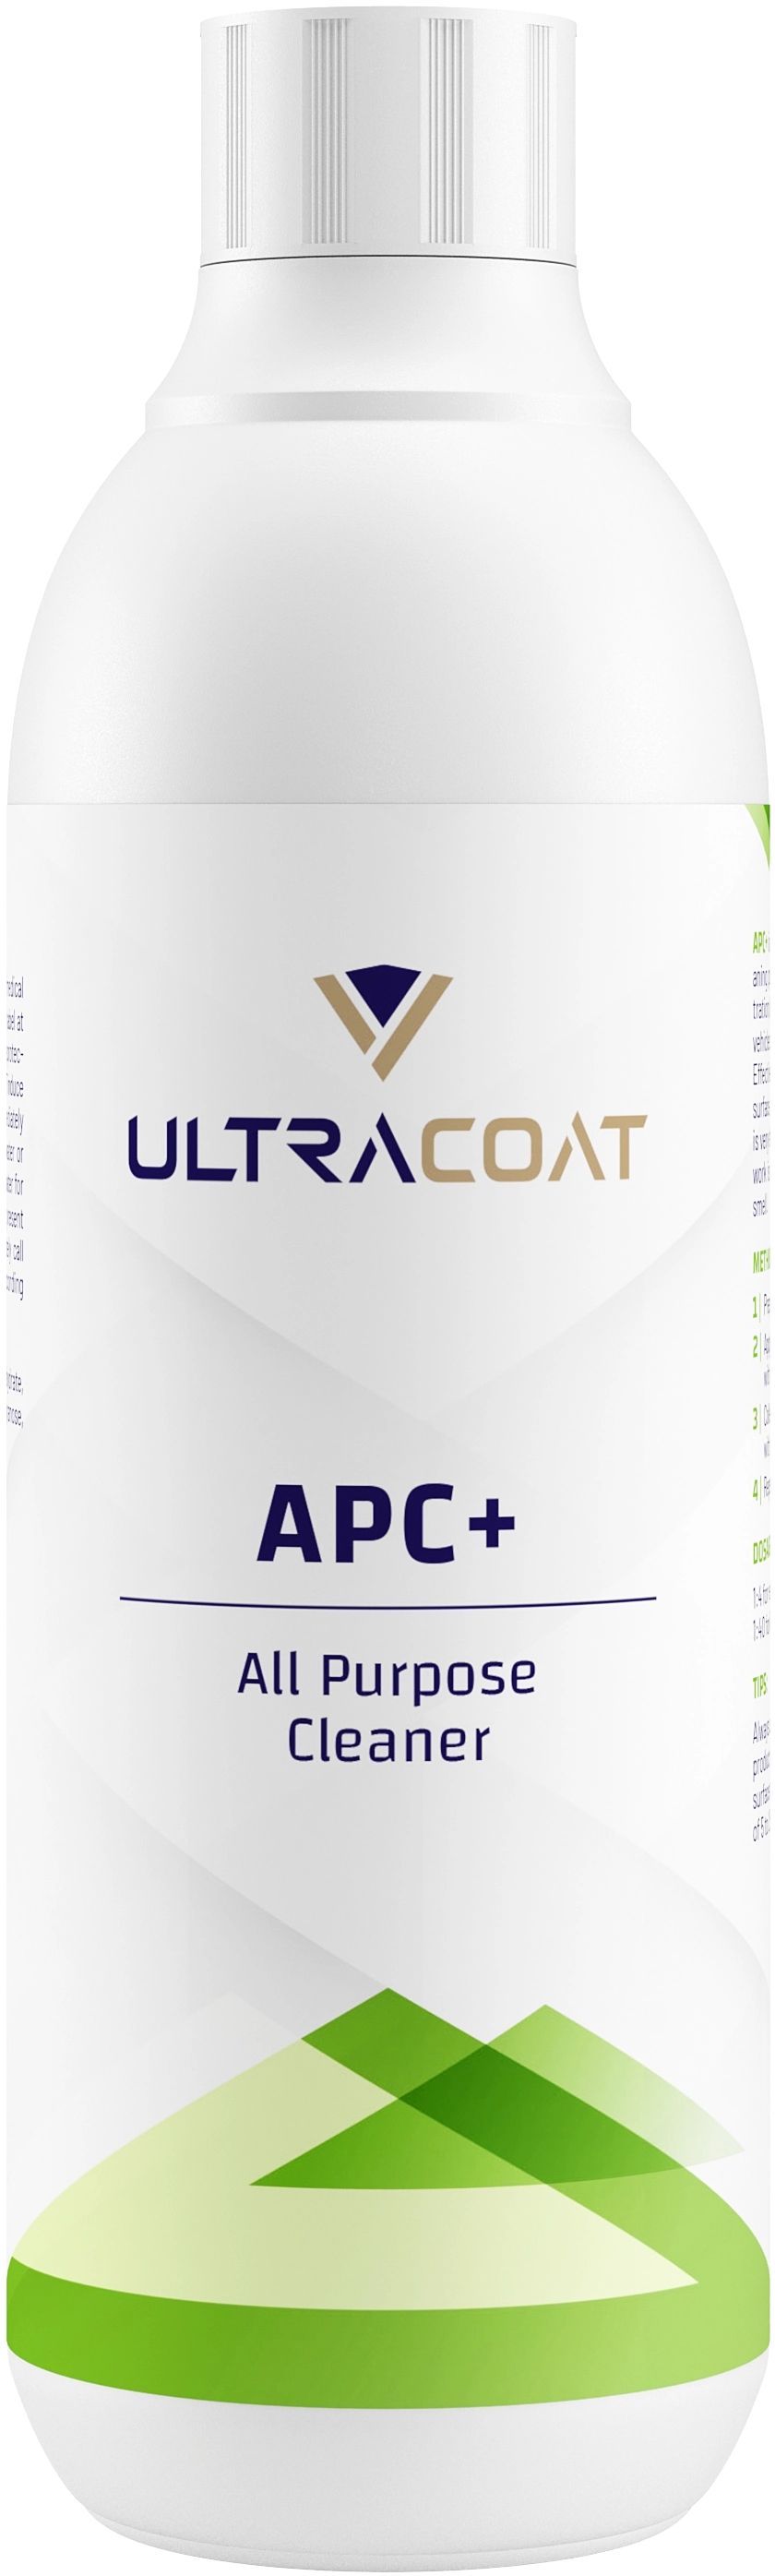 Image of Ultracoat APC+ - uniwersalny środek czyszczący, mocno skoncentrowany 500ml